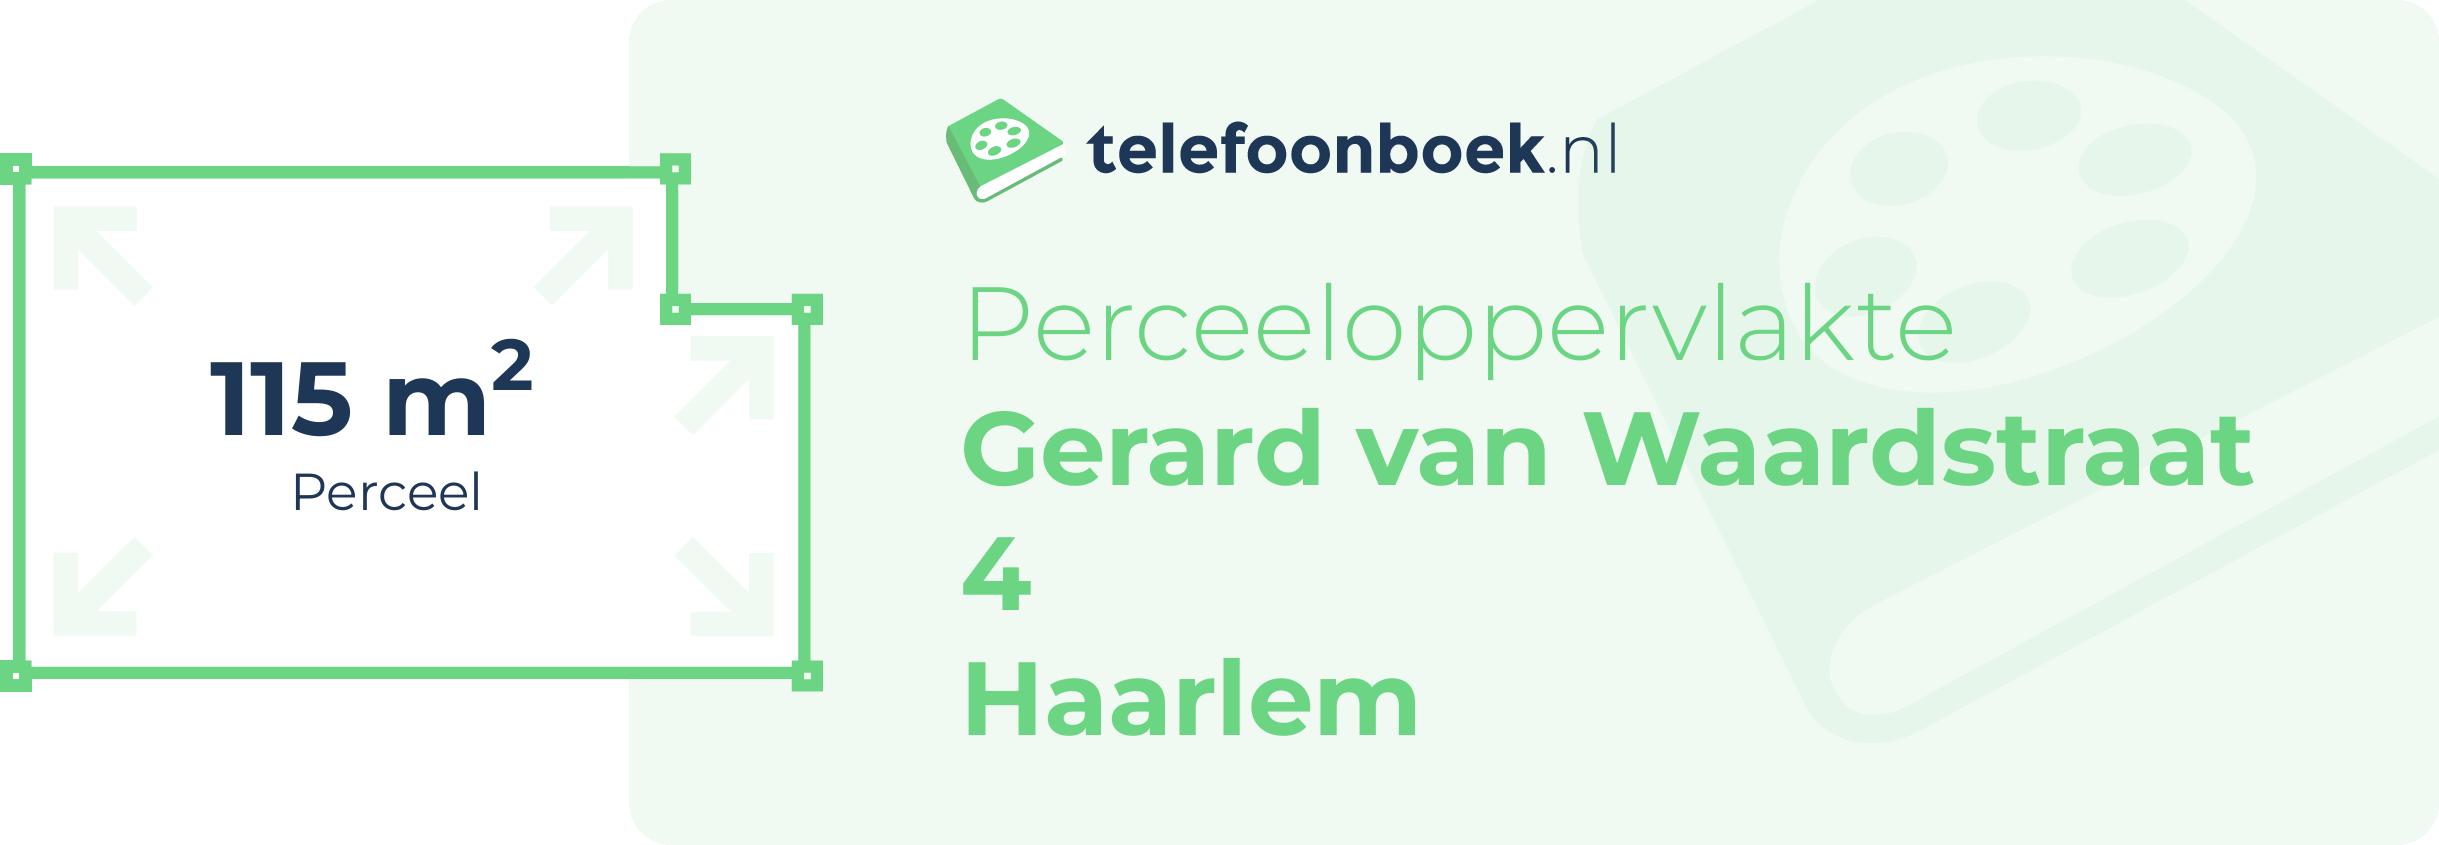 Perceeloppervlakte Gerard Van Waardstraat 4 Haarlem